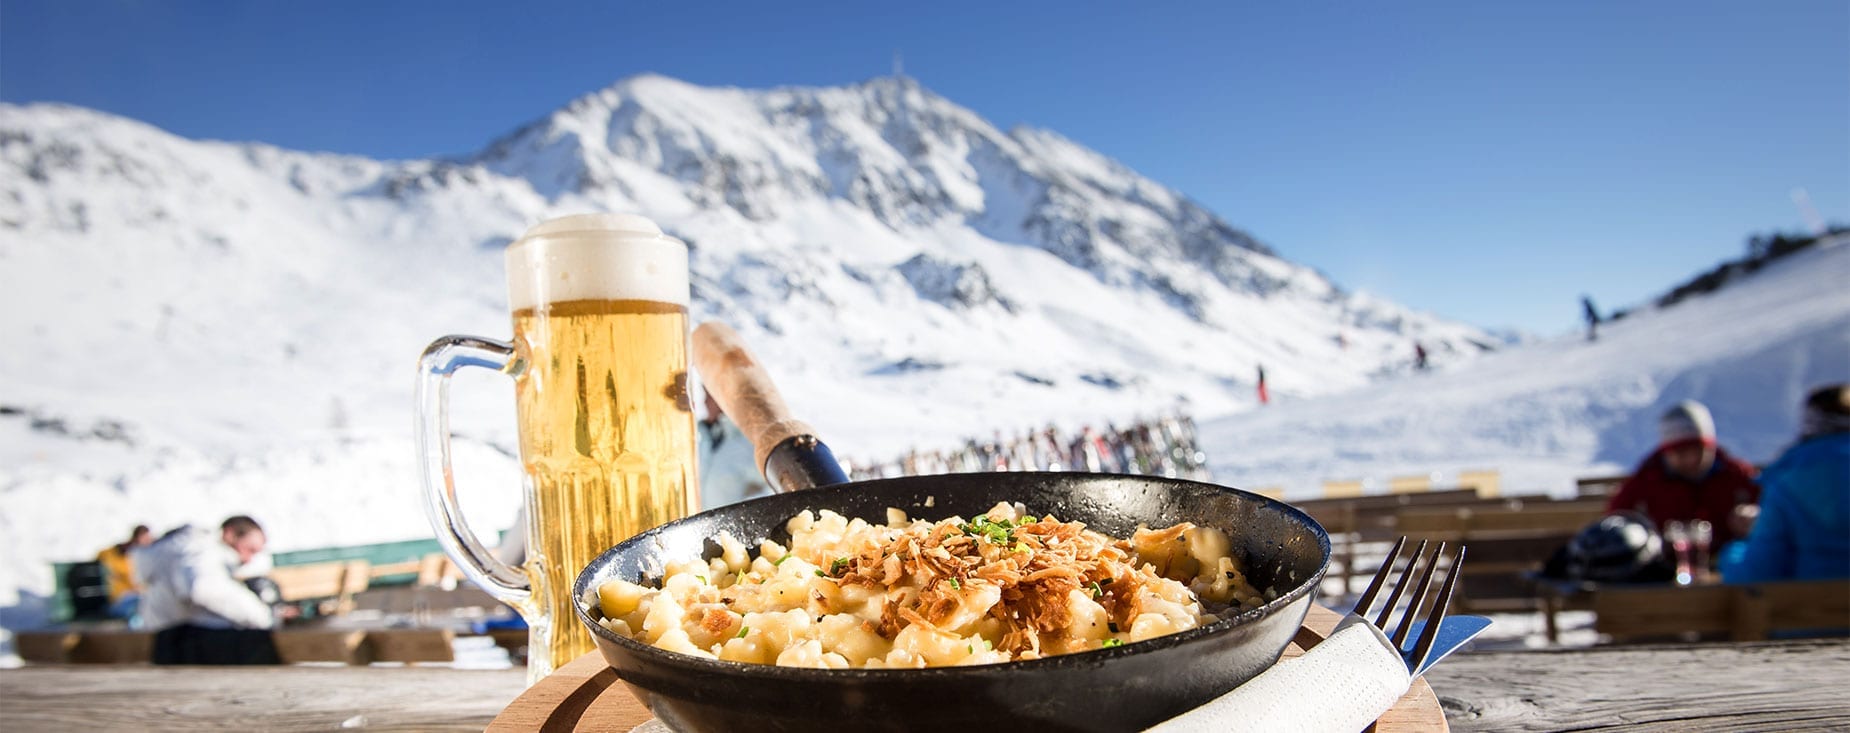 Skihütten & Restaurants im Skigebiet Obertauern